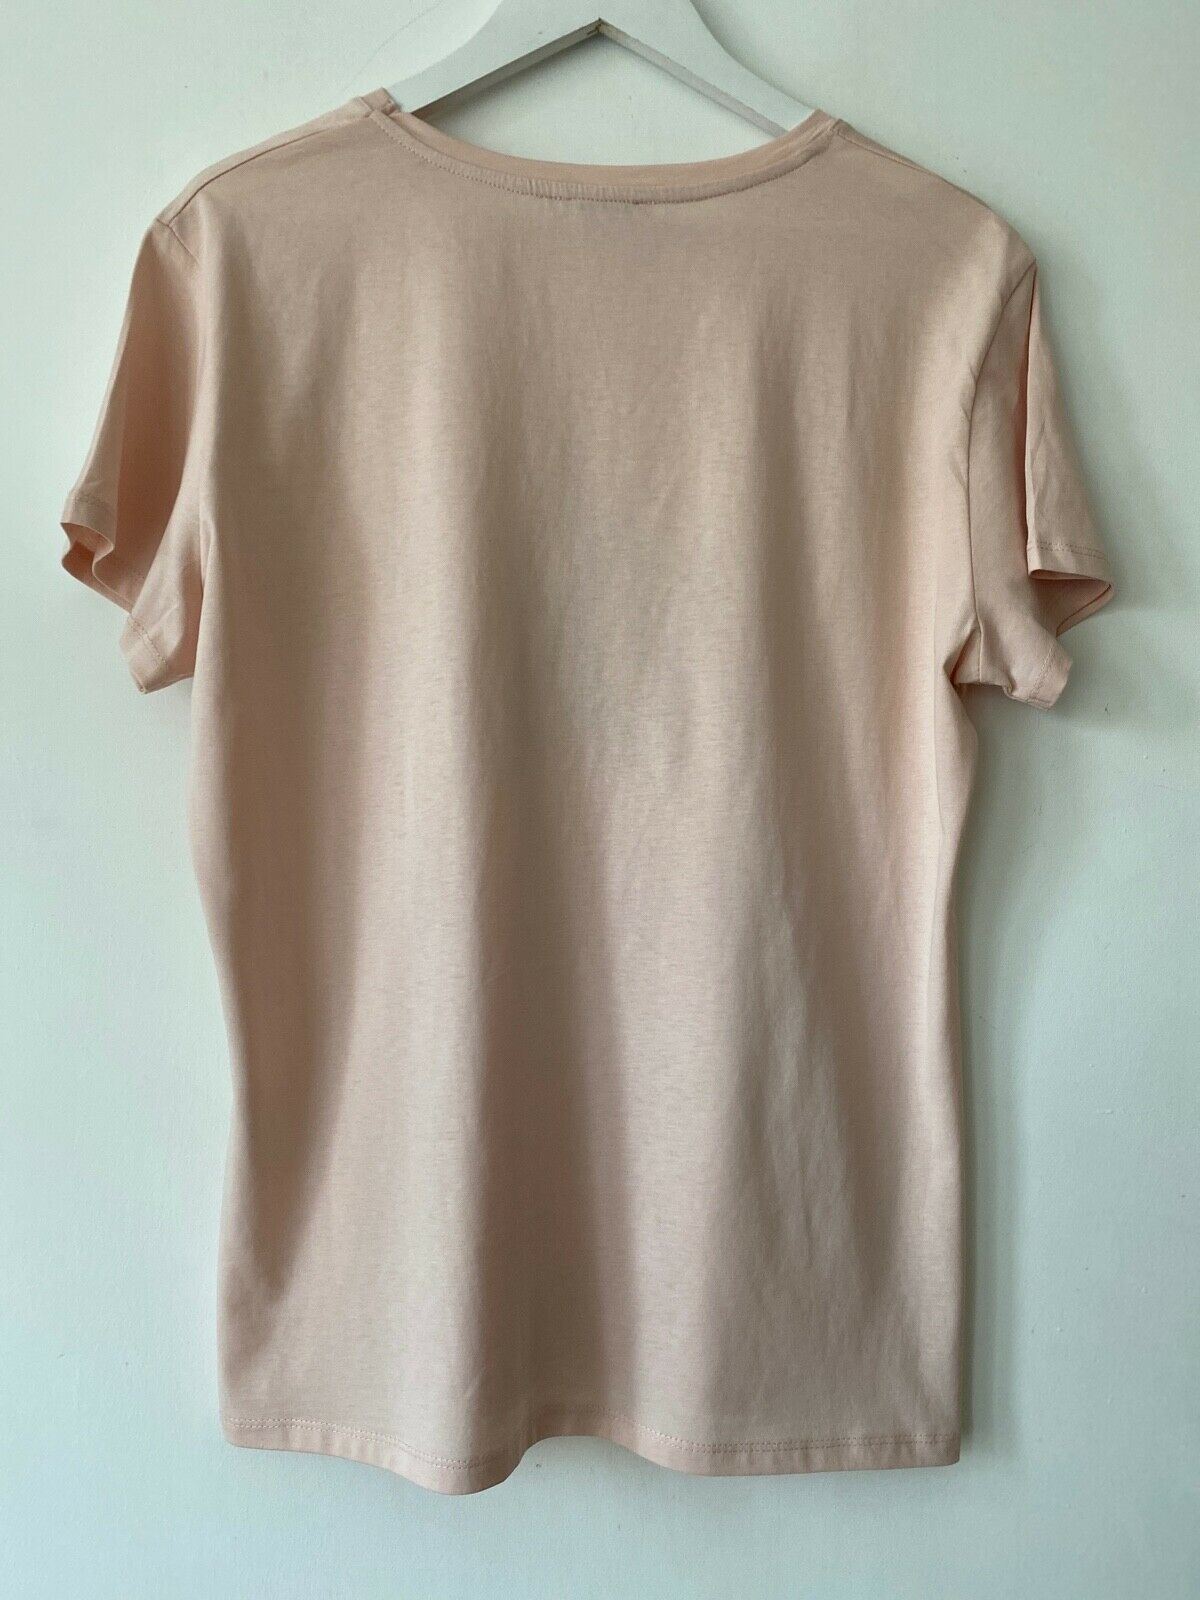 Papaya Blush Pink Cotton T-Shirt Size 14